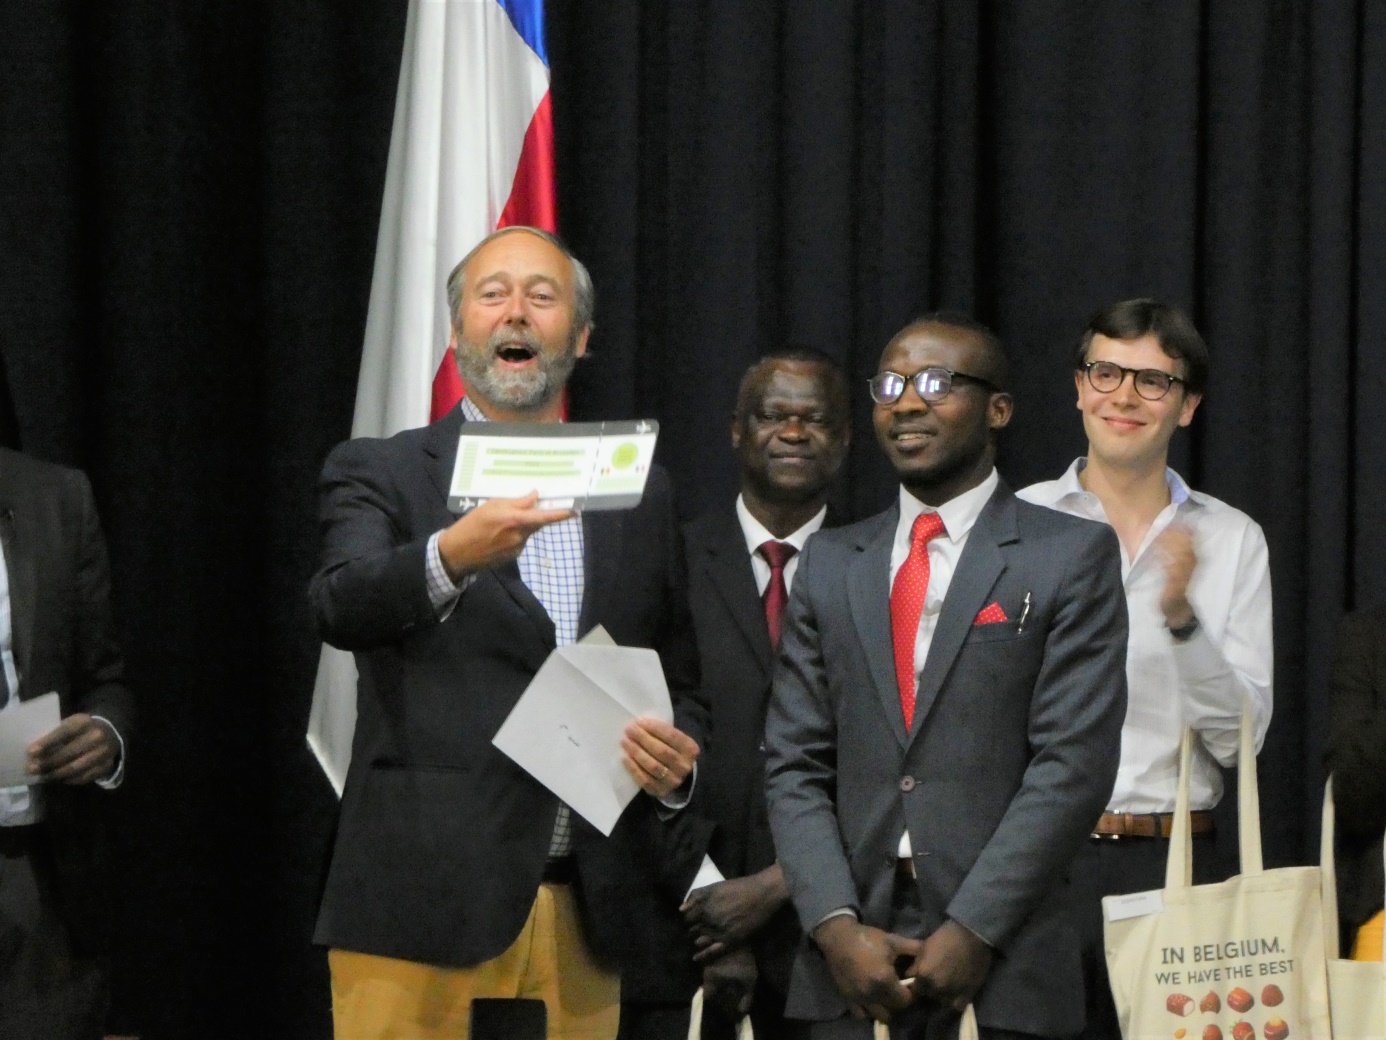 M. l'Ambassadeur de Belgique au Chili, Christian de Lannoy, remet le 1er prix (un billet d'avion vers la France) au gagnant, Angelo Gaspard